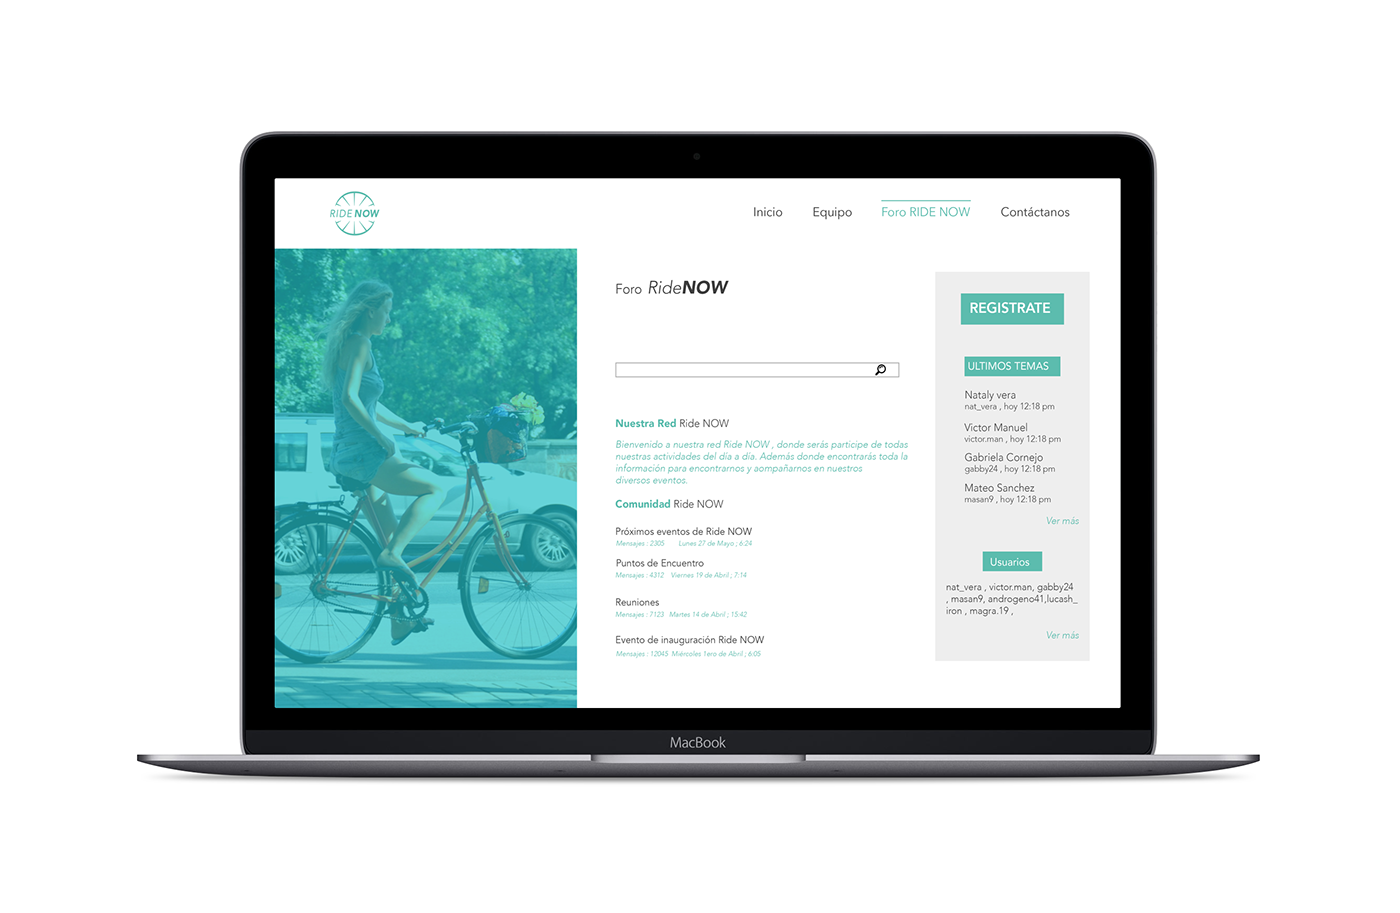 app ridenow descuentos TRAFICO servicio ecológico pagina web smartphone Bicycle traffic lima